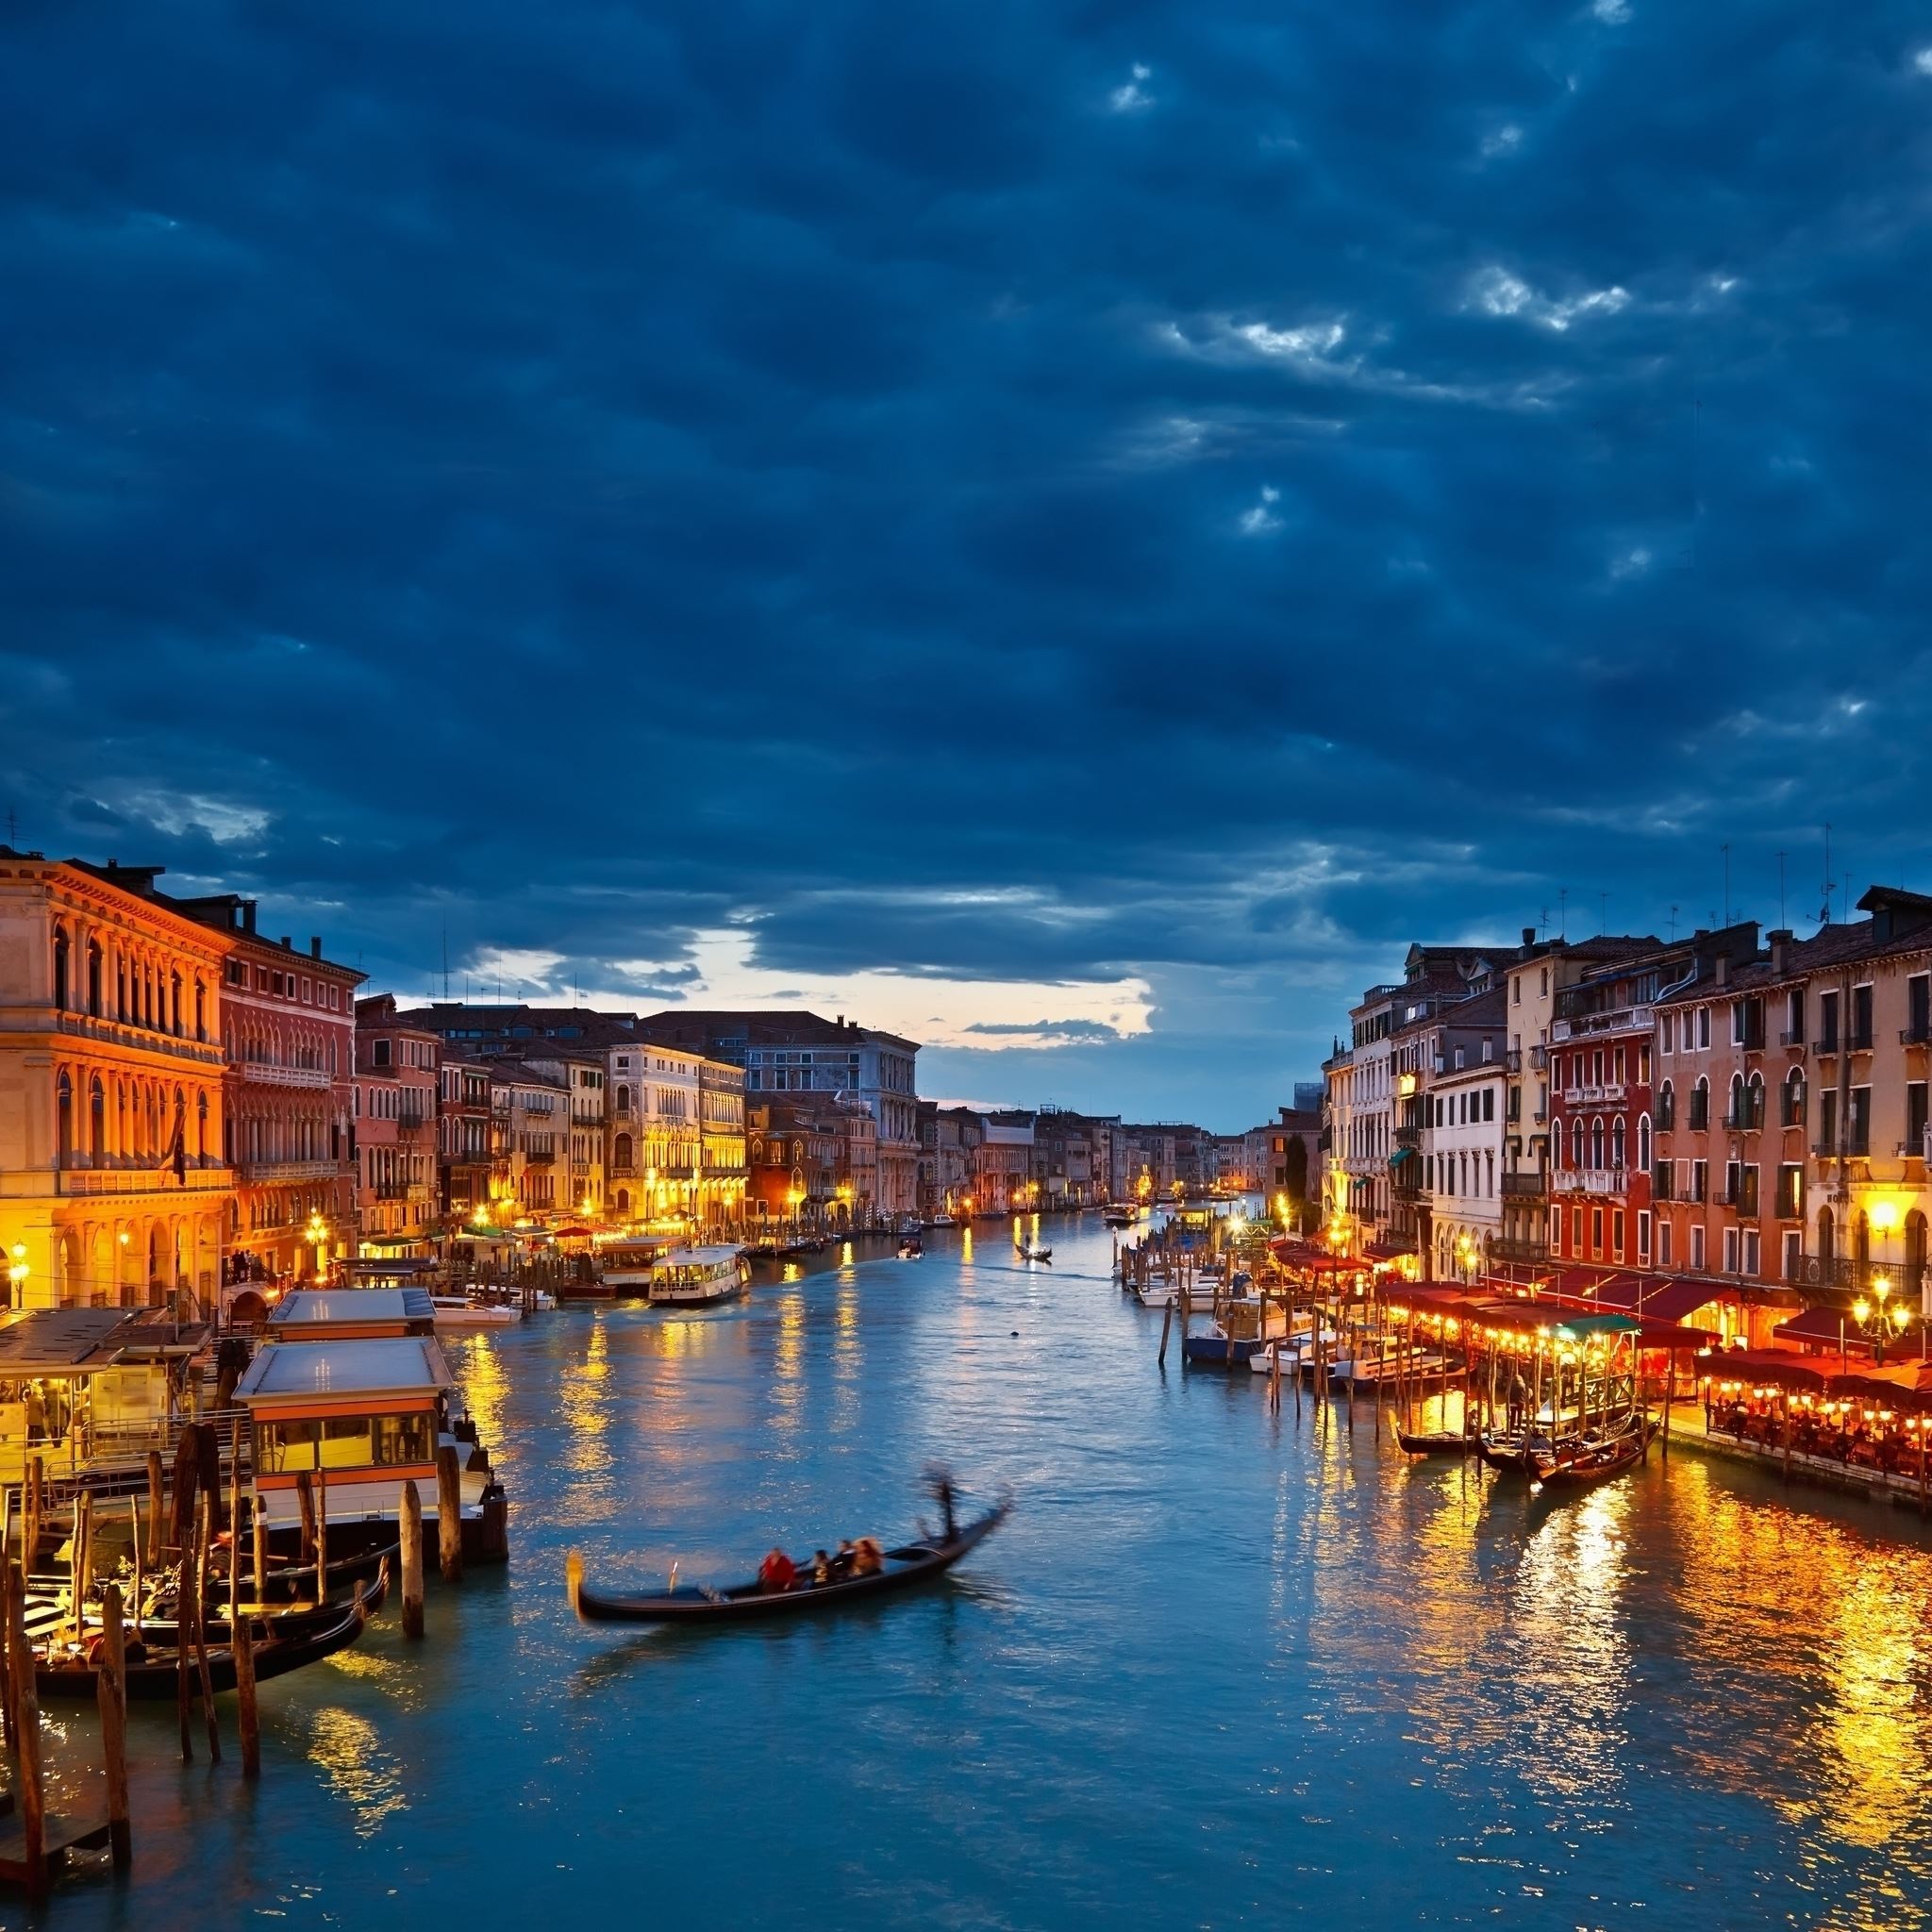 Night in Venice iPad Air wallpaper 